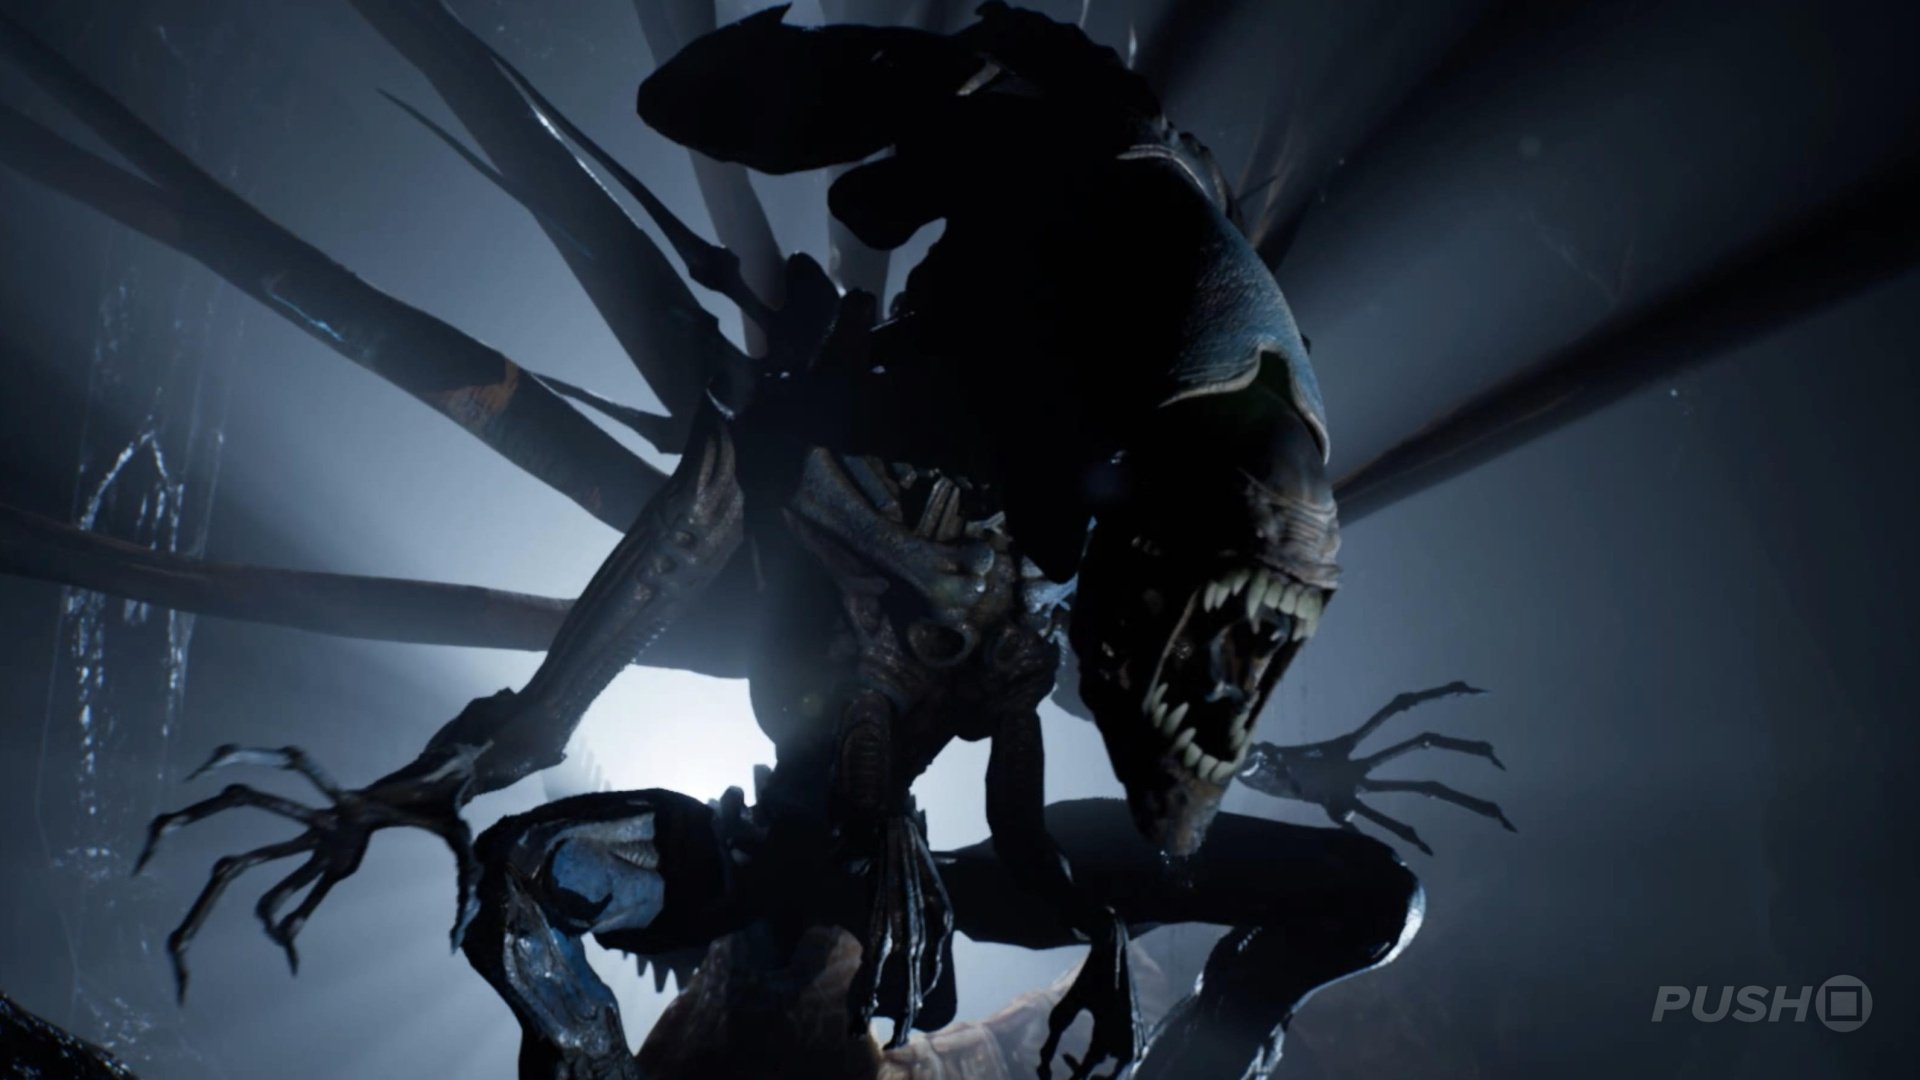 Aliens: Dark Descent - Metacritic